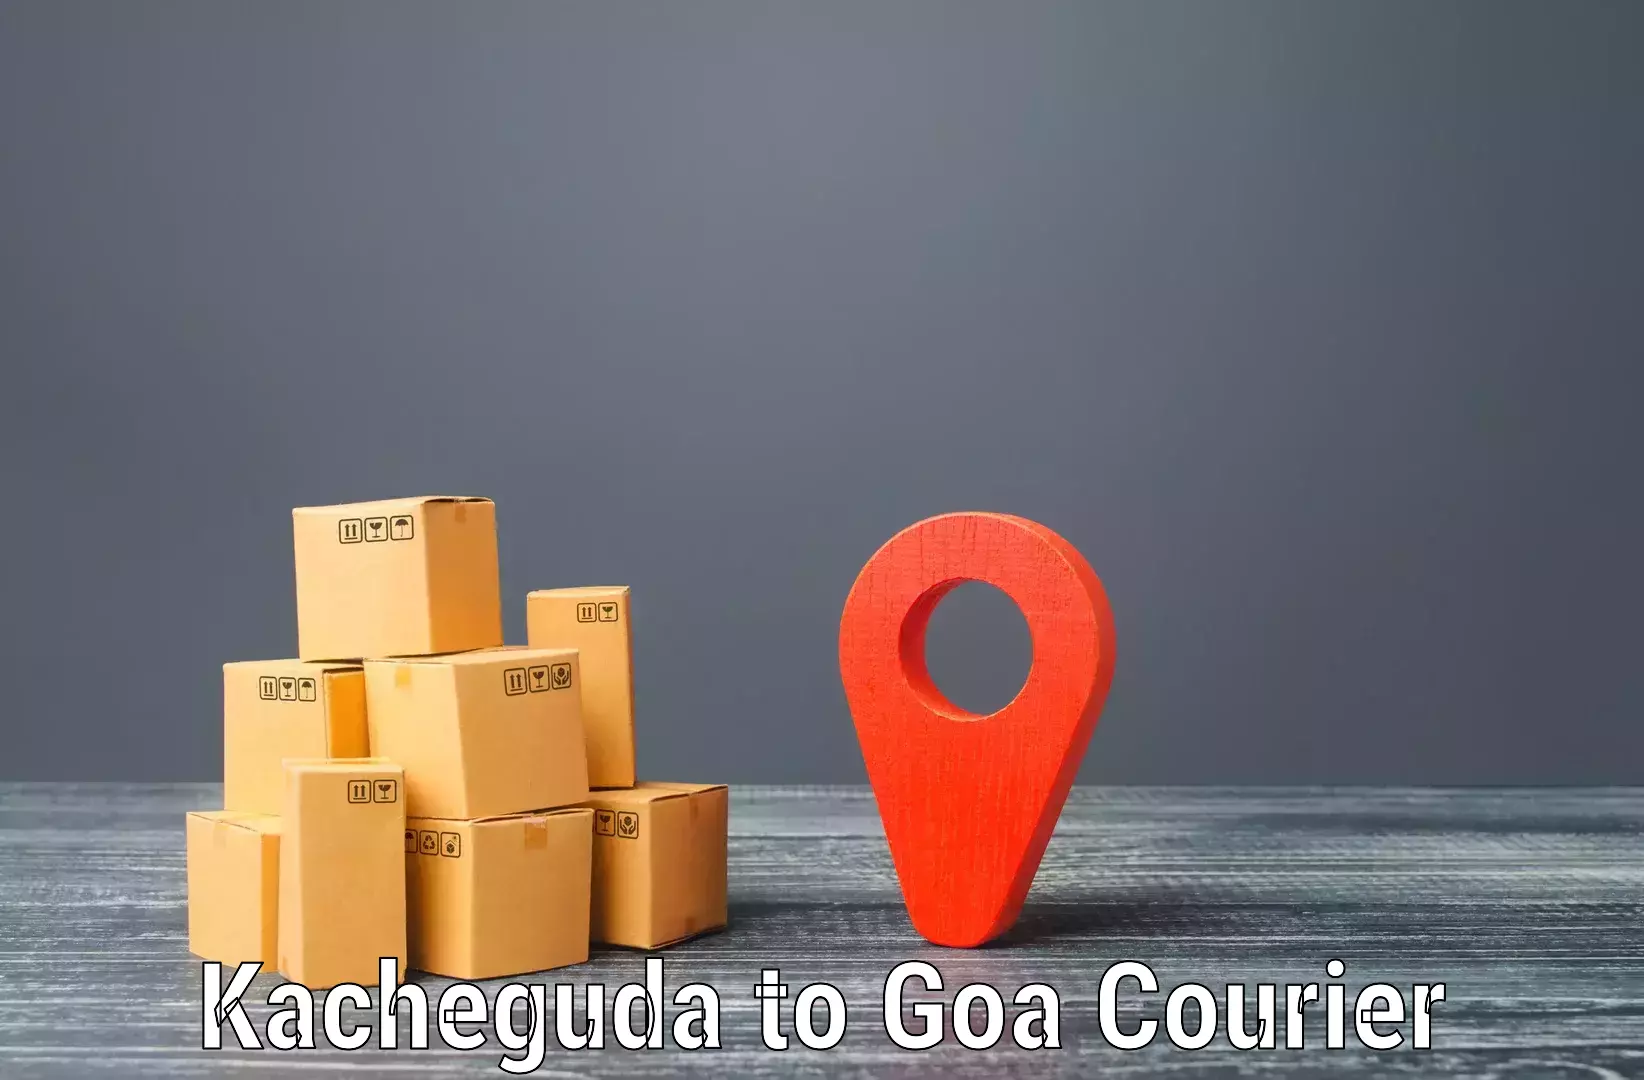 Comprehensive shipping network Kacheguda to Panaji